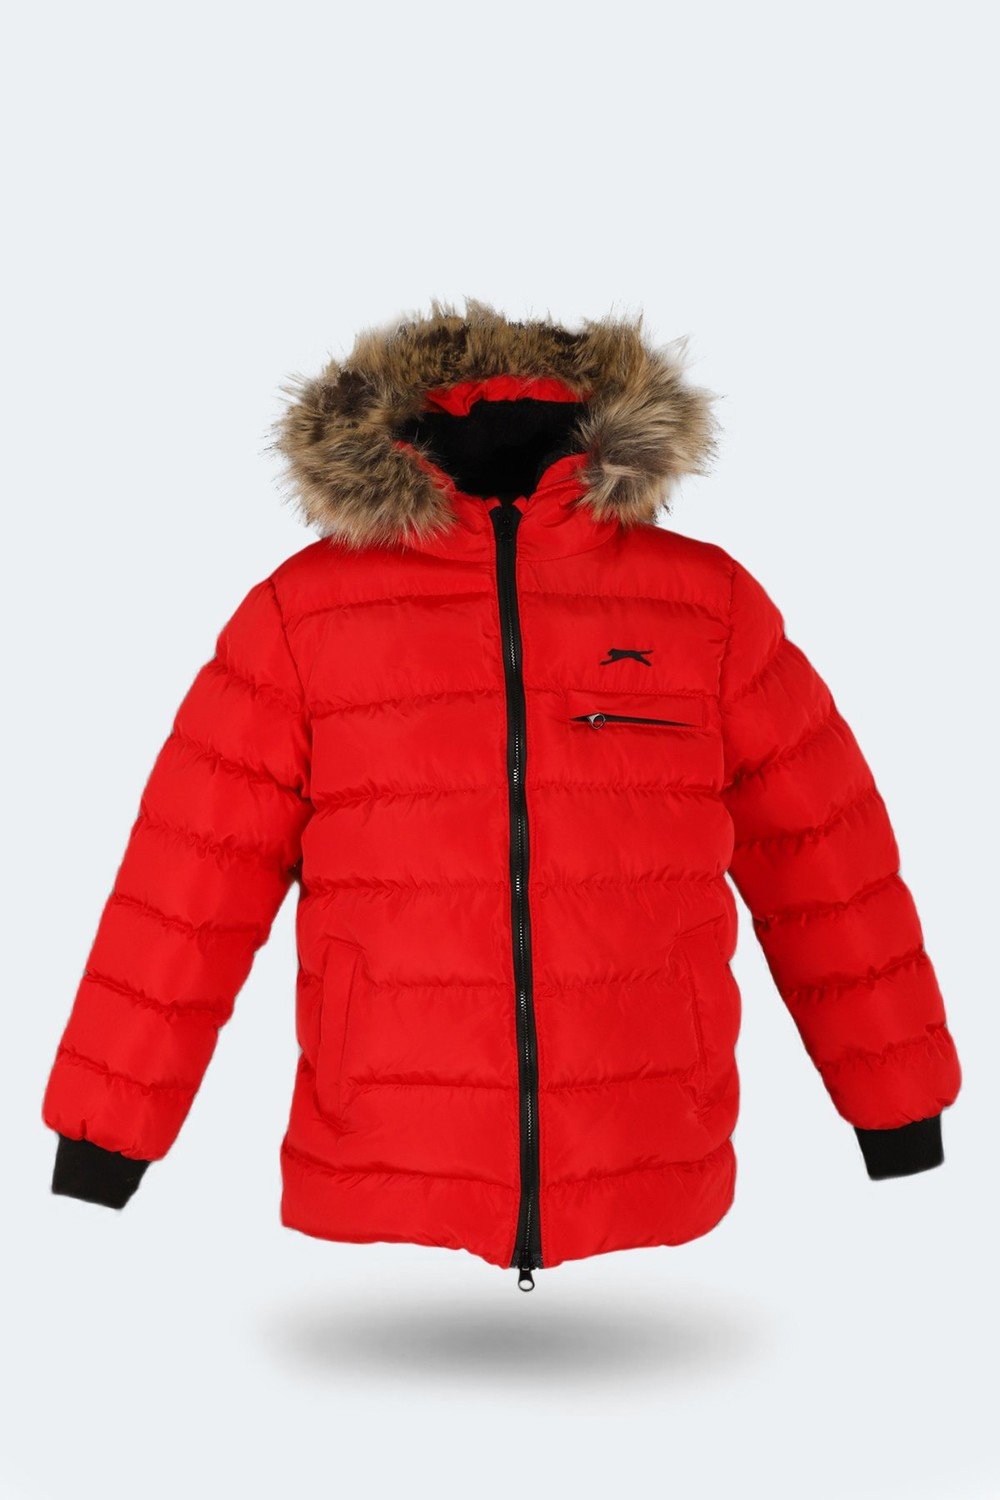 Slazenger Winter Jacket - Red - Regular